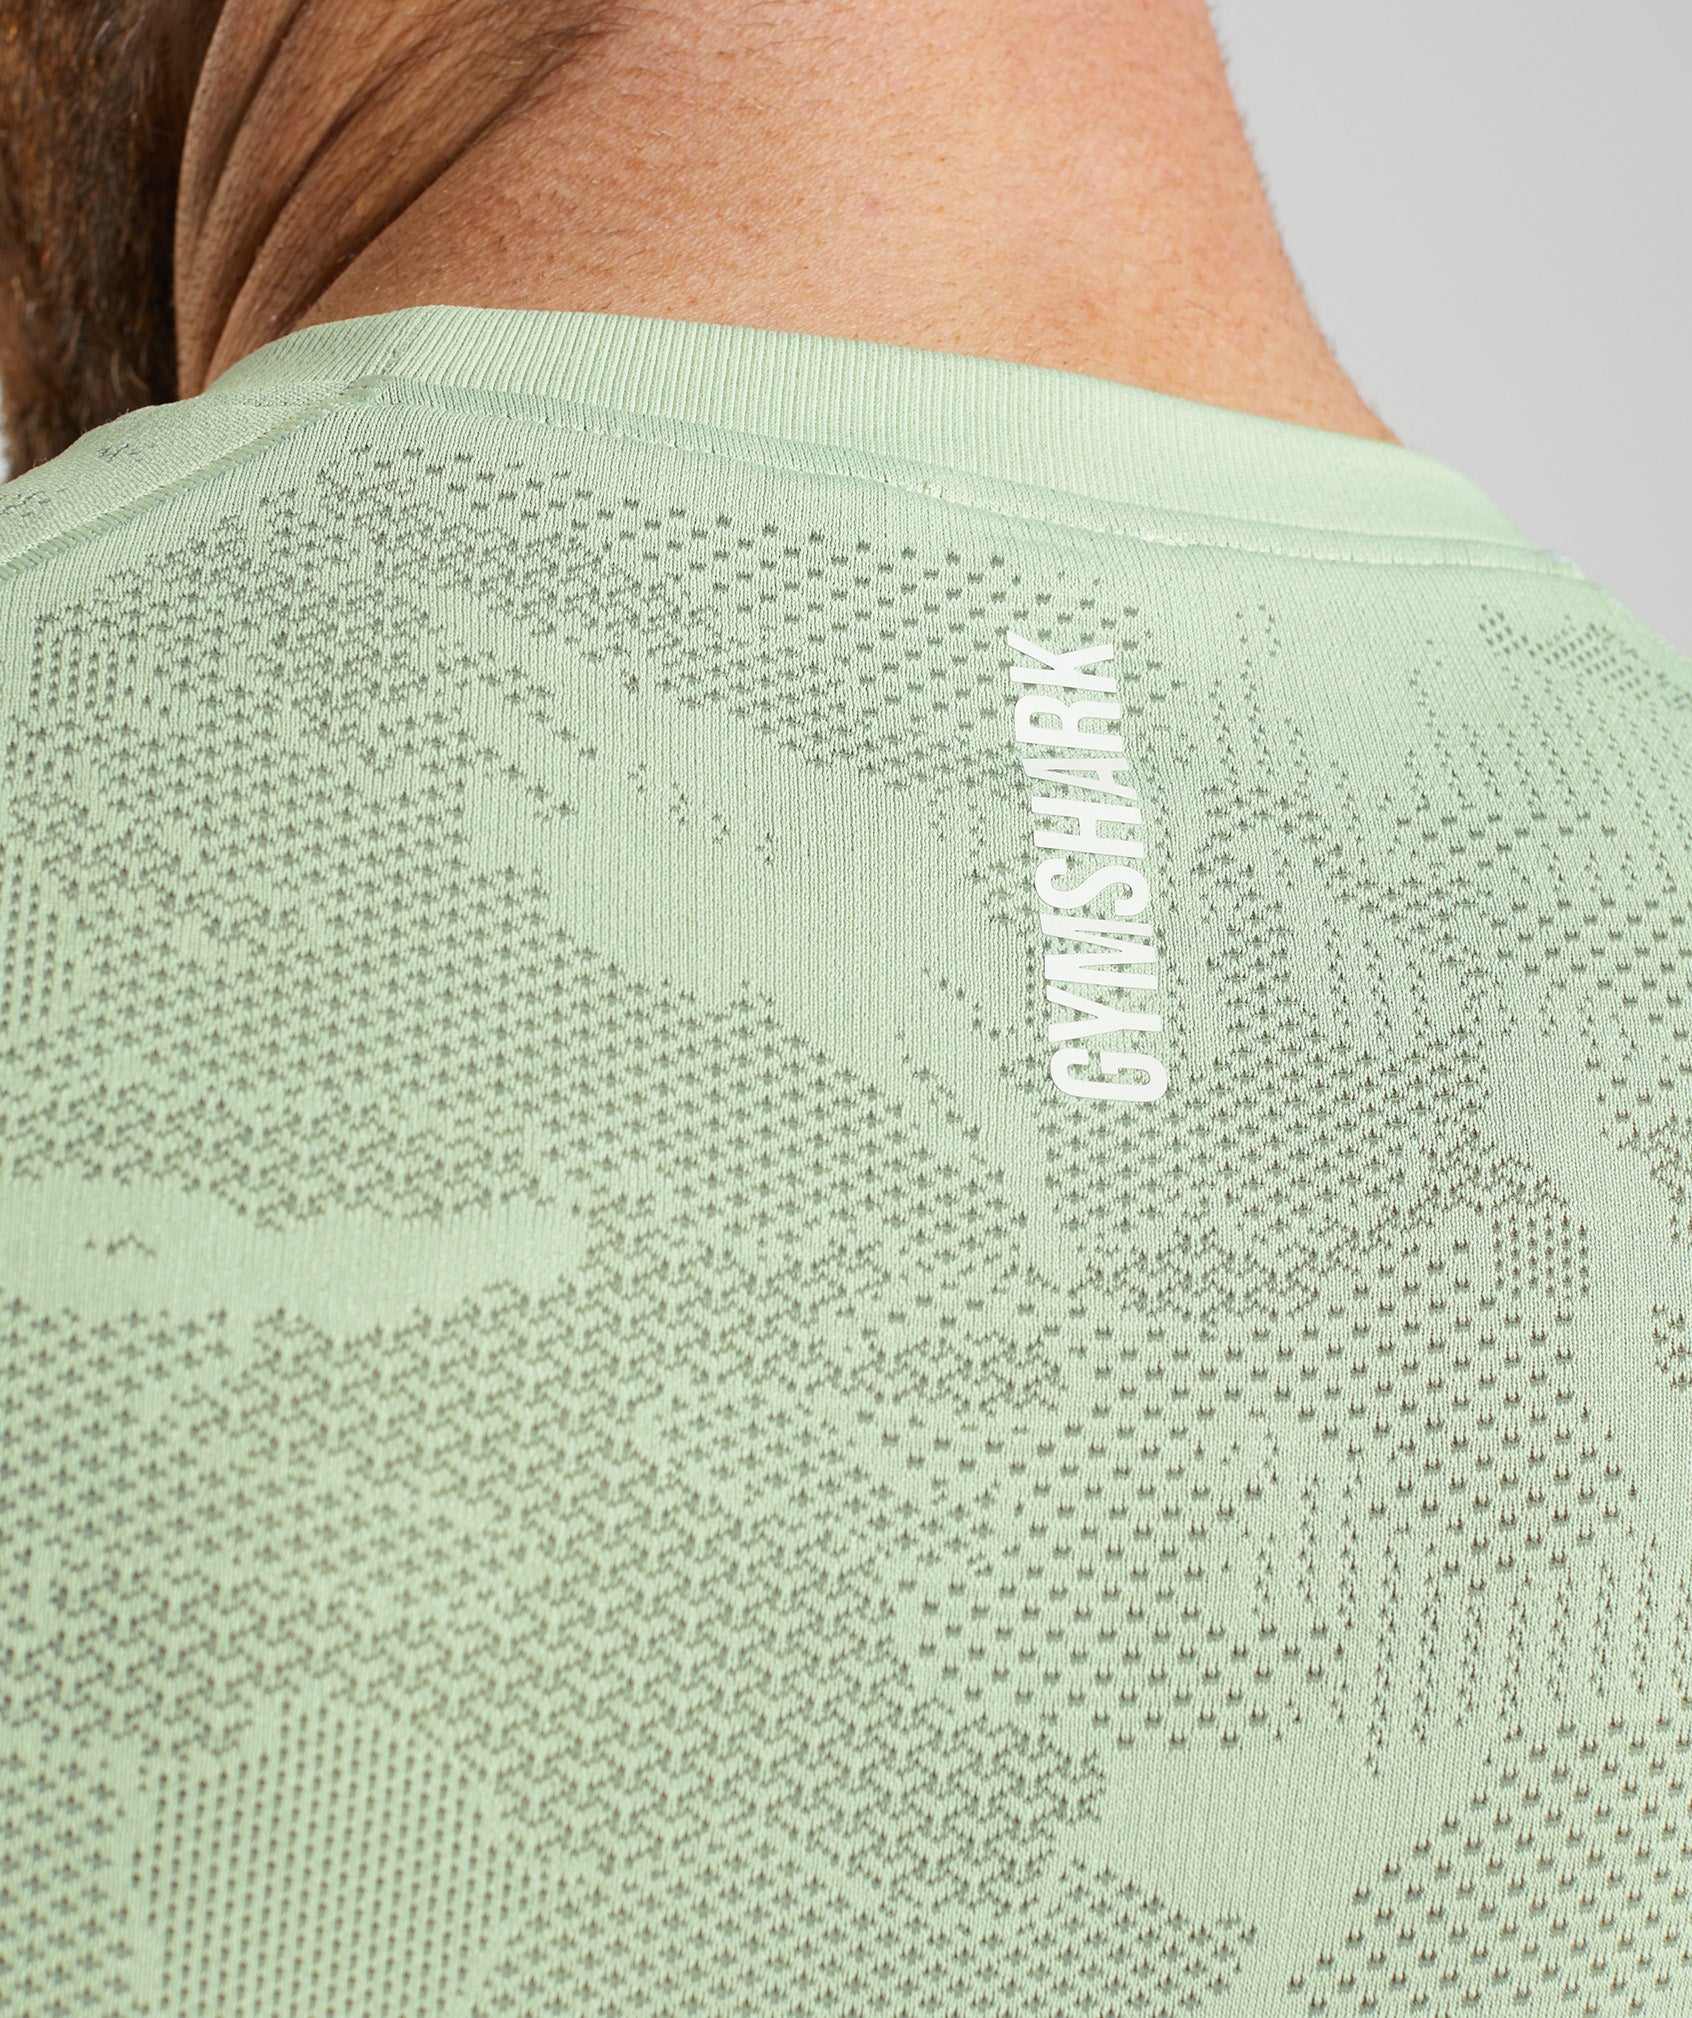 Gymshark Geo Seamless Long Sleeve T-Shirt - Flora Green/Willow